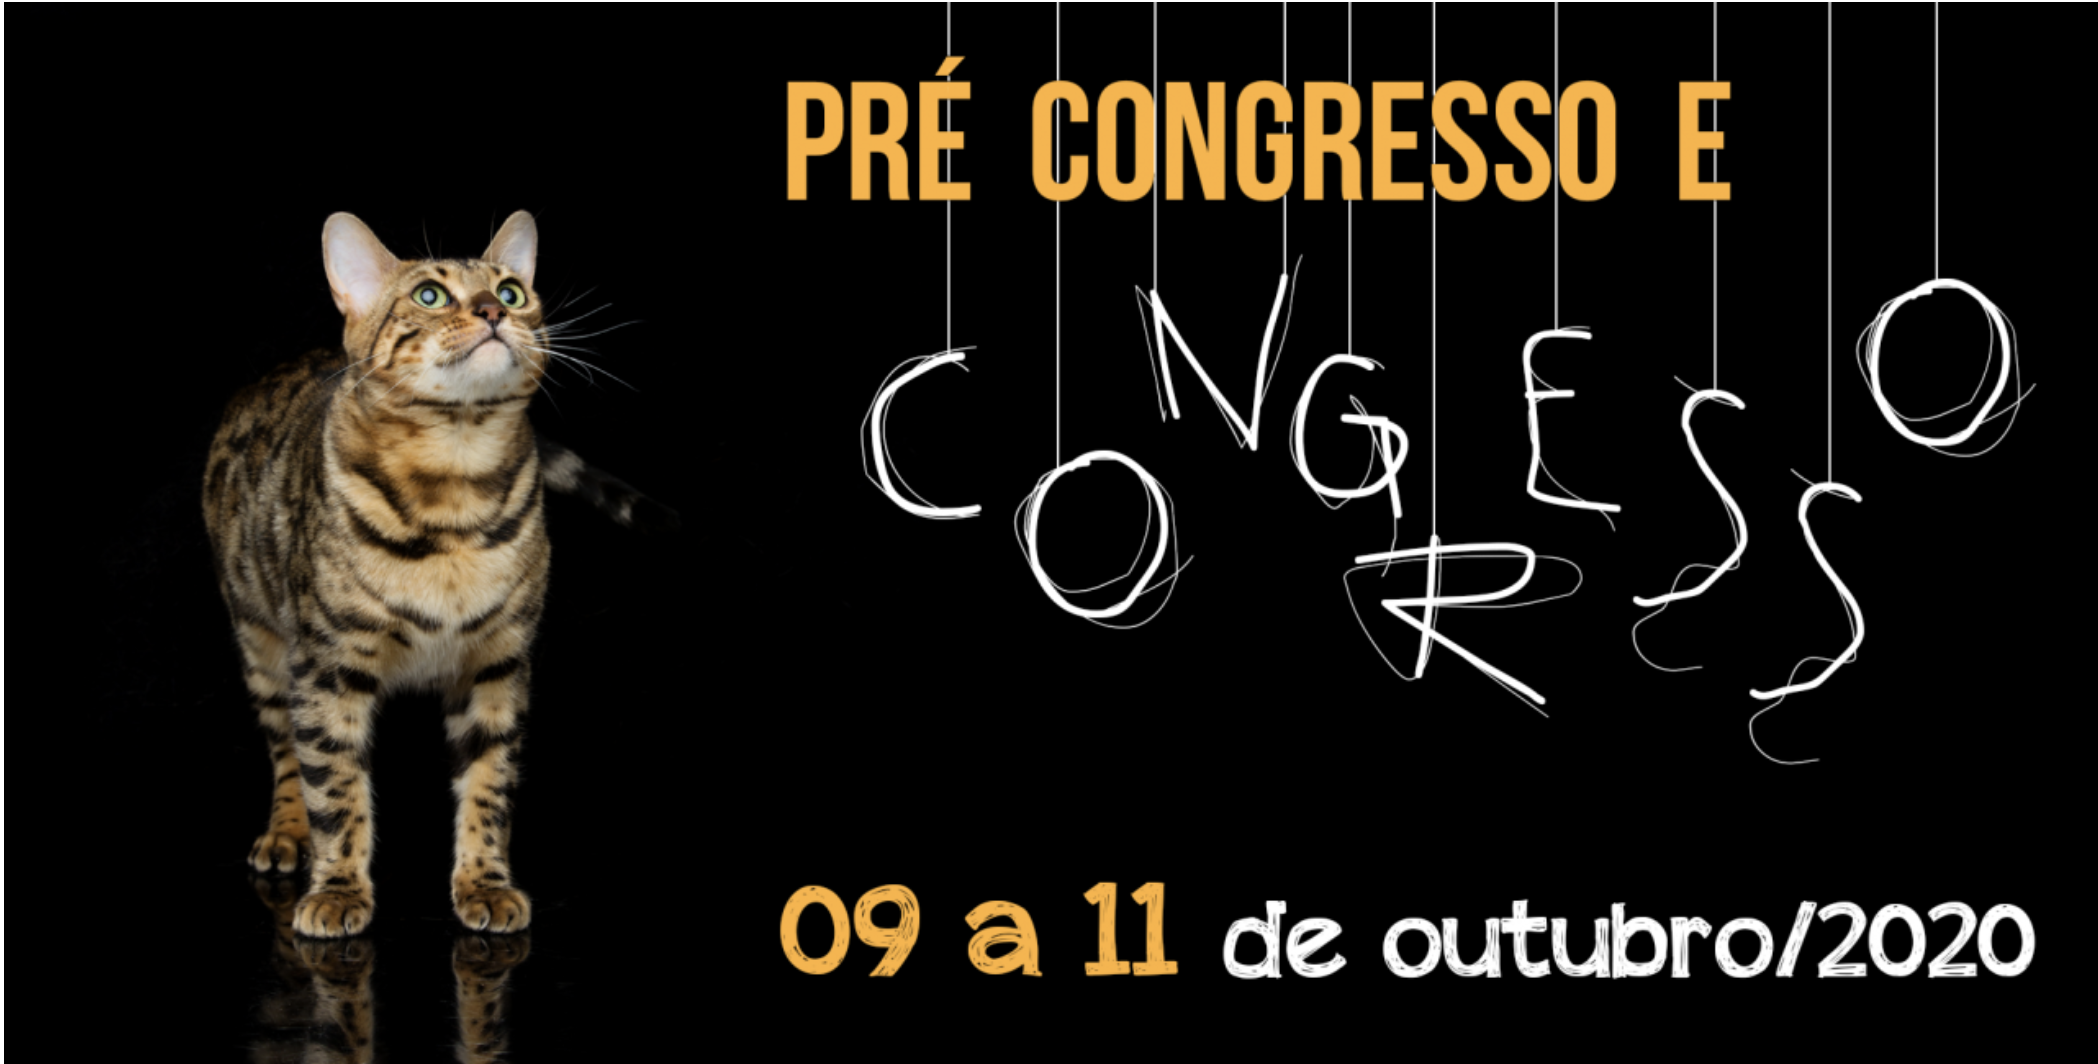 CAT Congress SP 2020 - Pré congresso + Congresso